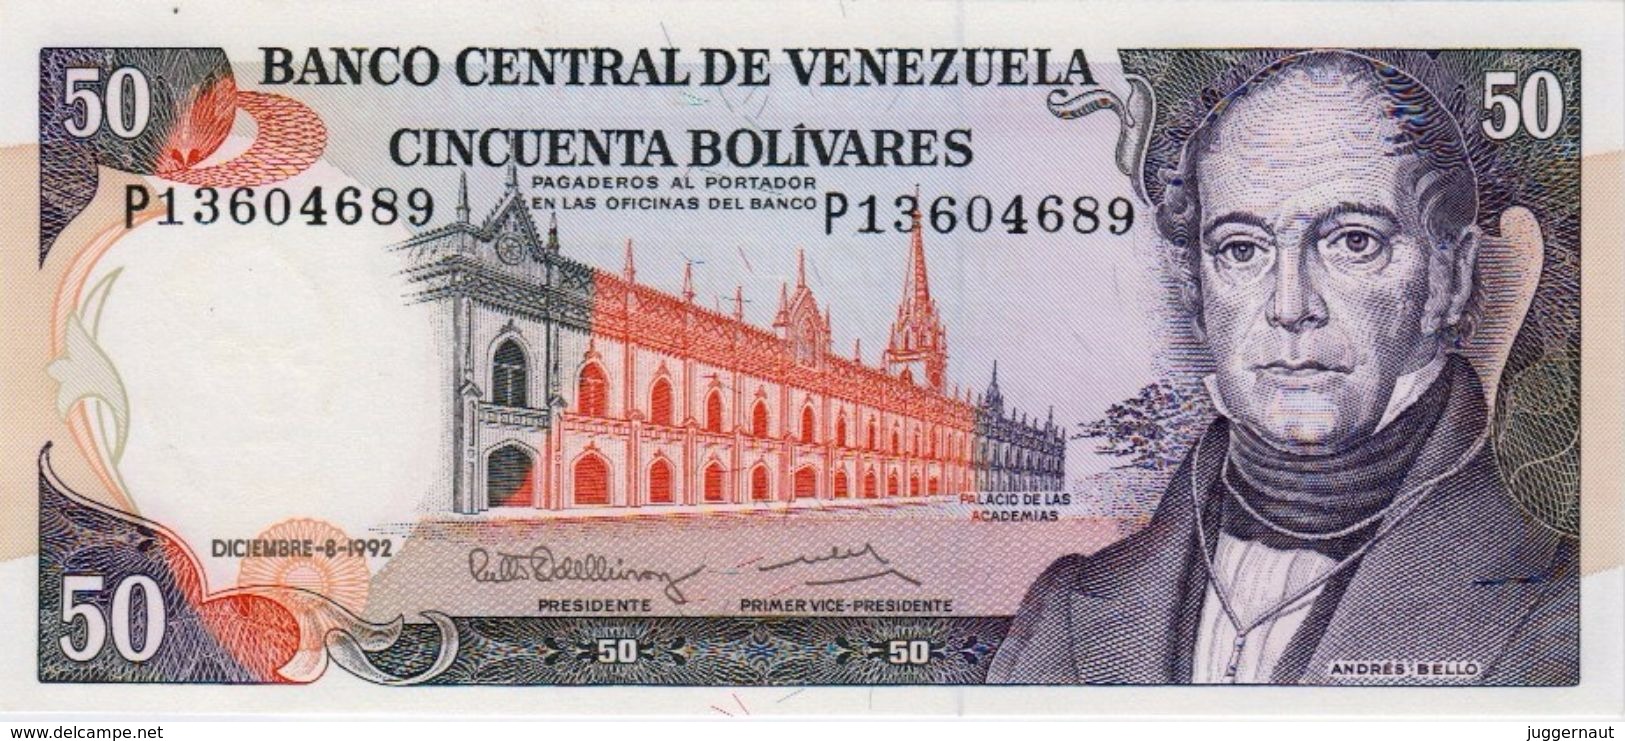 VENEZUELA 50 BOLIVIARES BANKNOTE 1992 PICK NO.65 UNCIRCULATED UNC - Venezuela